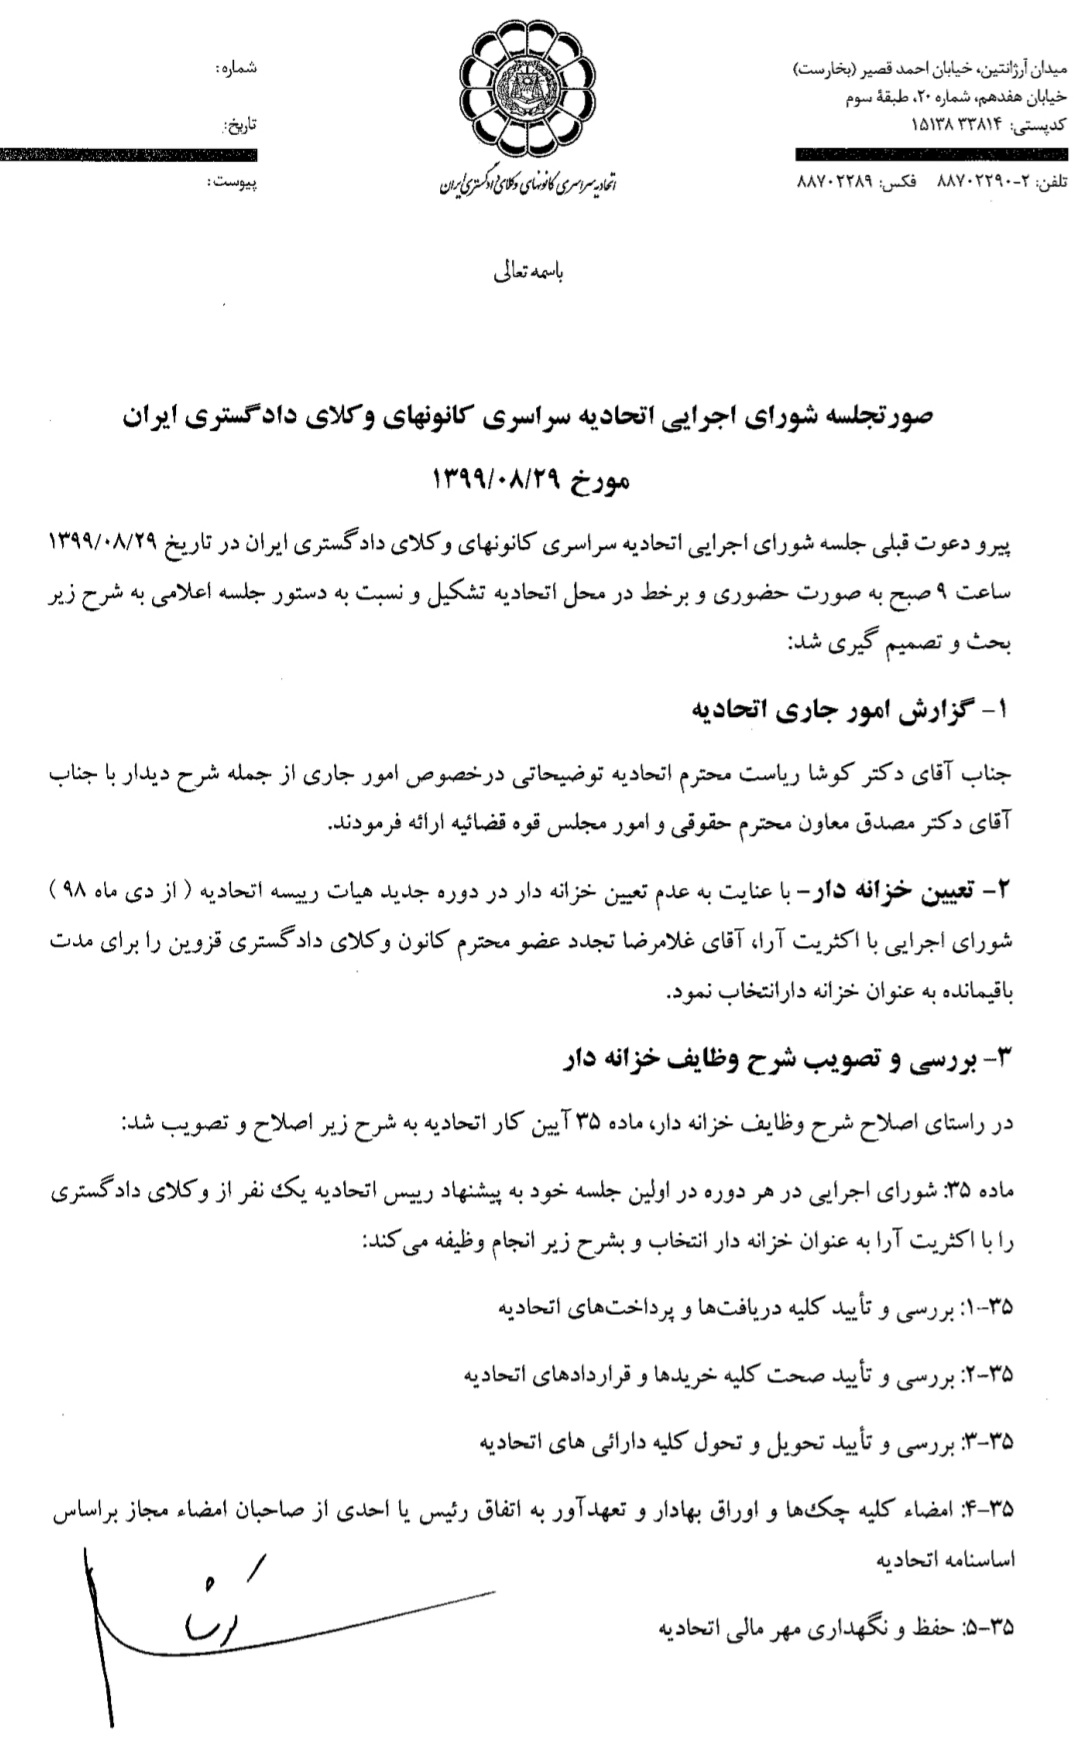 صورتجلسه شورای اجرایی اتحادیه سراسری کانونهای وکلای دادگستری ایران مورخ ۹۹/۸/۲۹